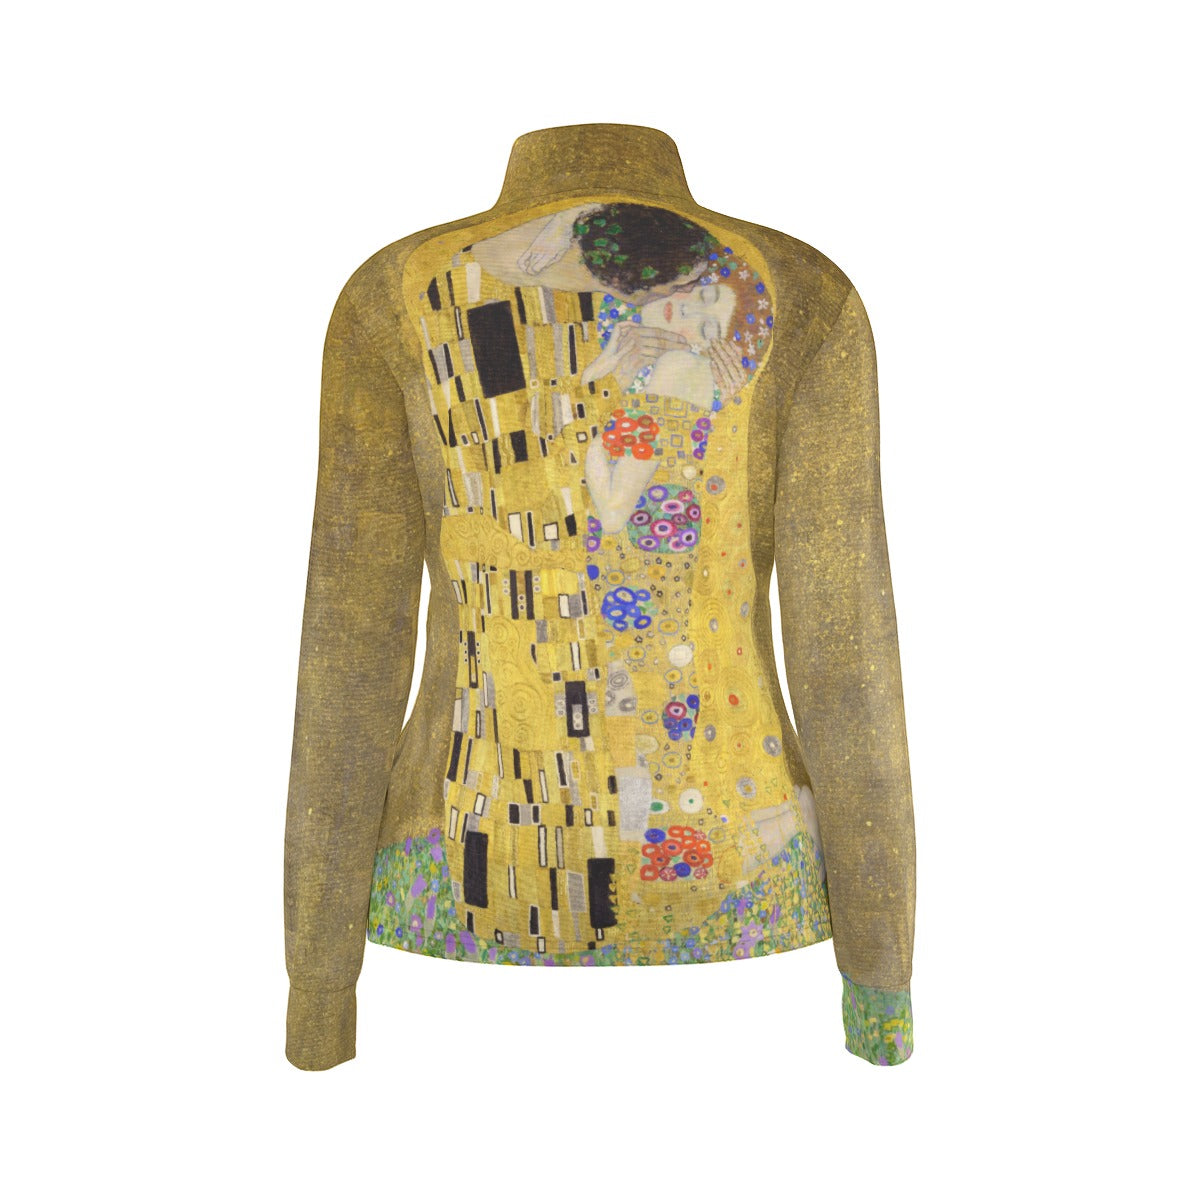 Stylish Gustav Klimt Clothing